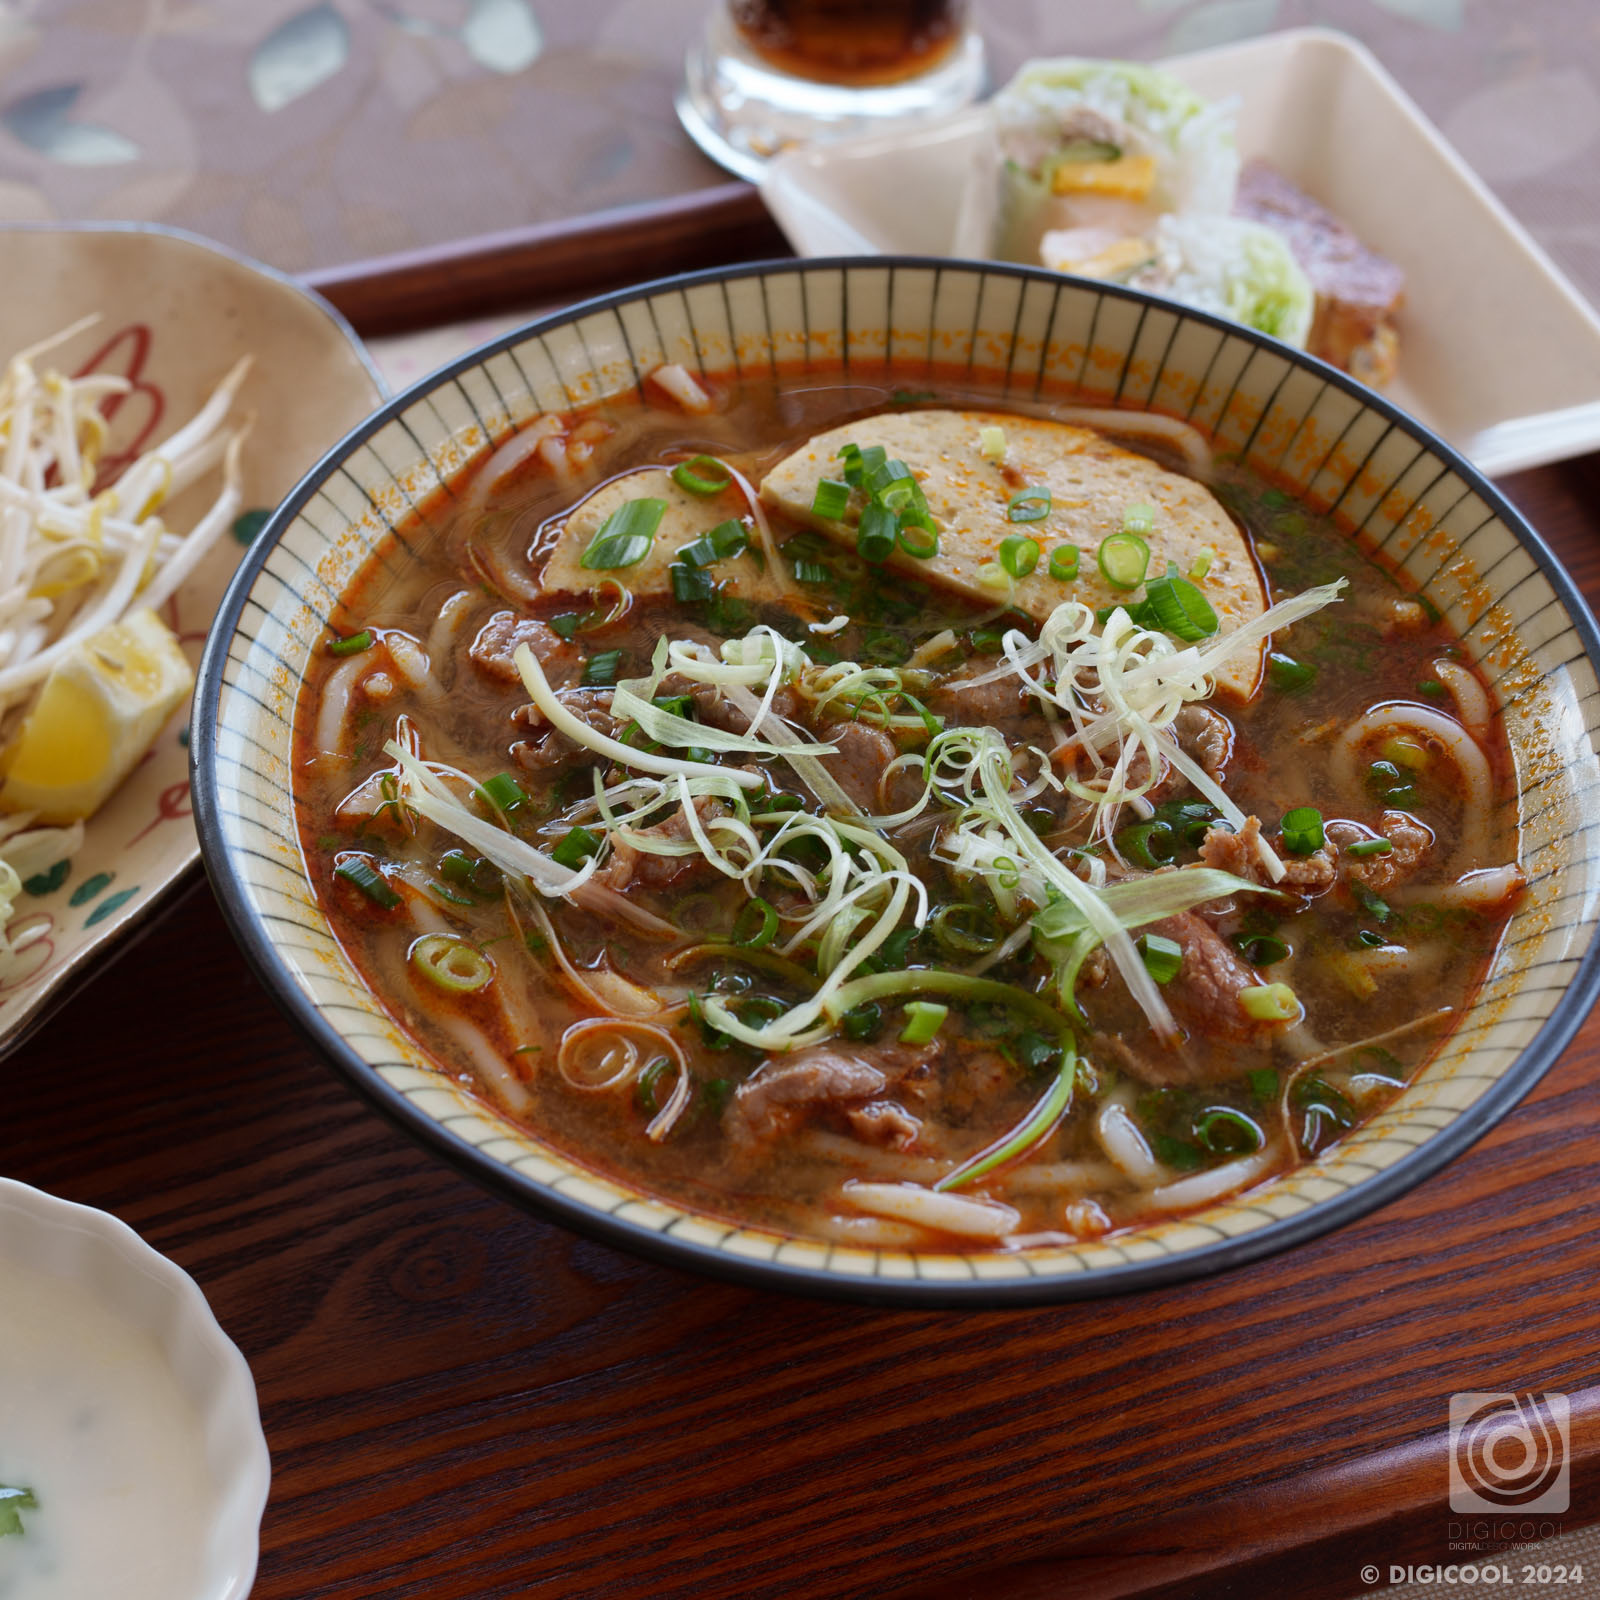 沖縄県 沖縄市・ベトナム食材を扱う「ZAKIMI TUAN MART」で本格ベトナム料理ブン・ボーを食べてきました。